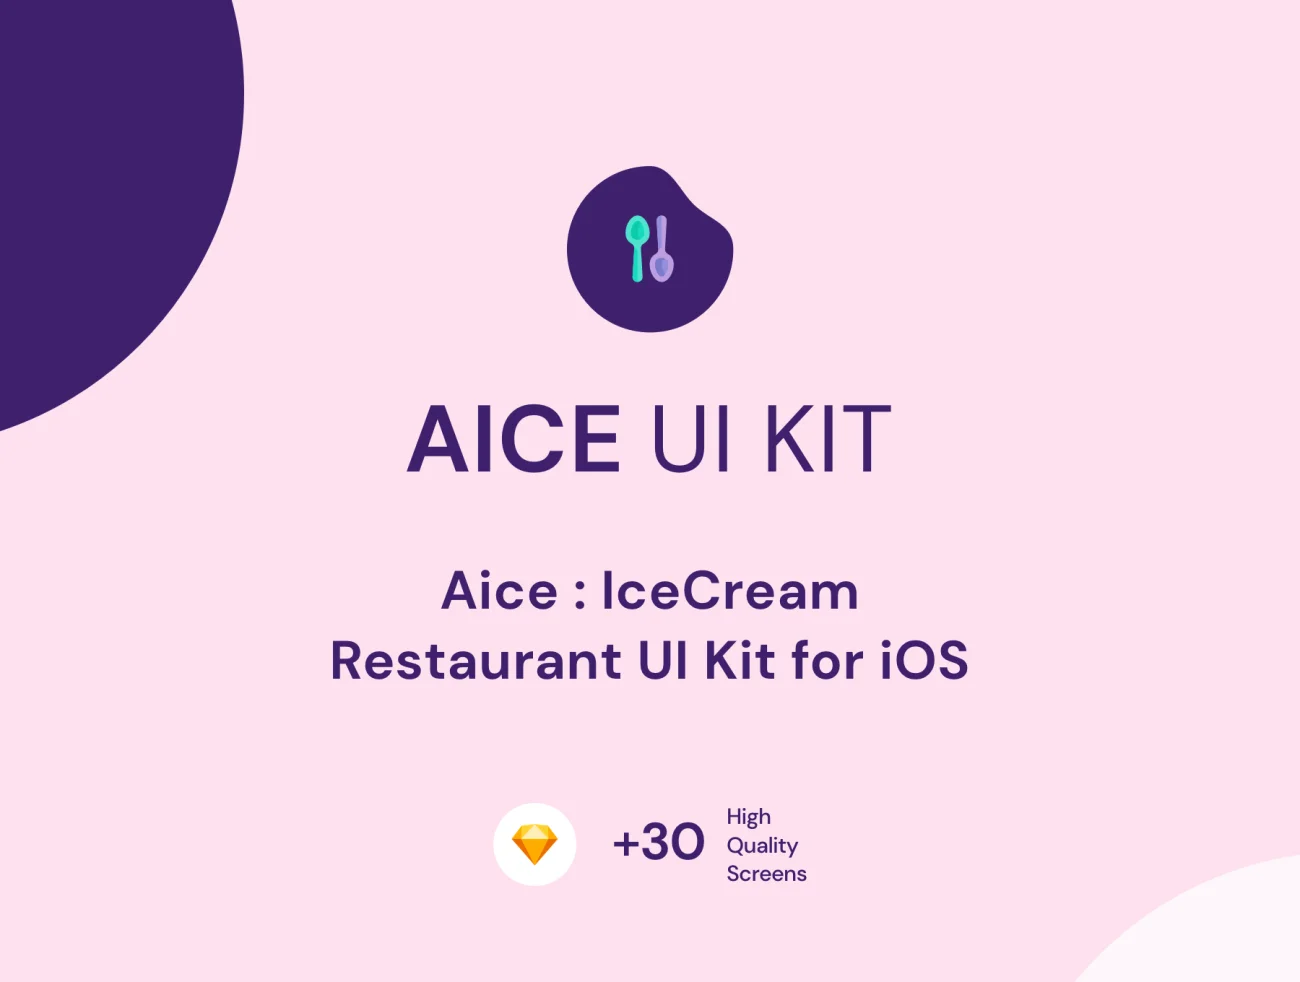 Aice UI Kit  餐厅用户界面套件-UI/UX、ui套件、主页、介绍、付款、列表、卡片式、应用、引导页、支付、注册、登录页、着陆页、社交、网站、网购、预订-到位啦UI